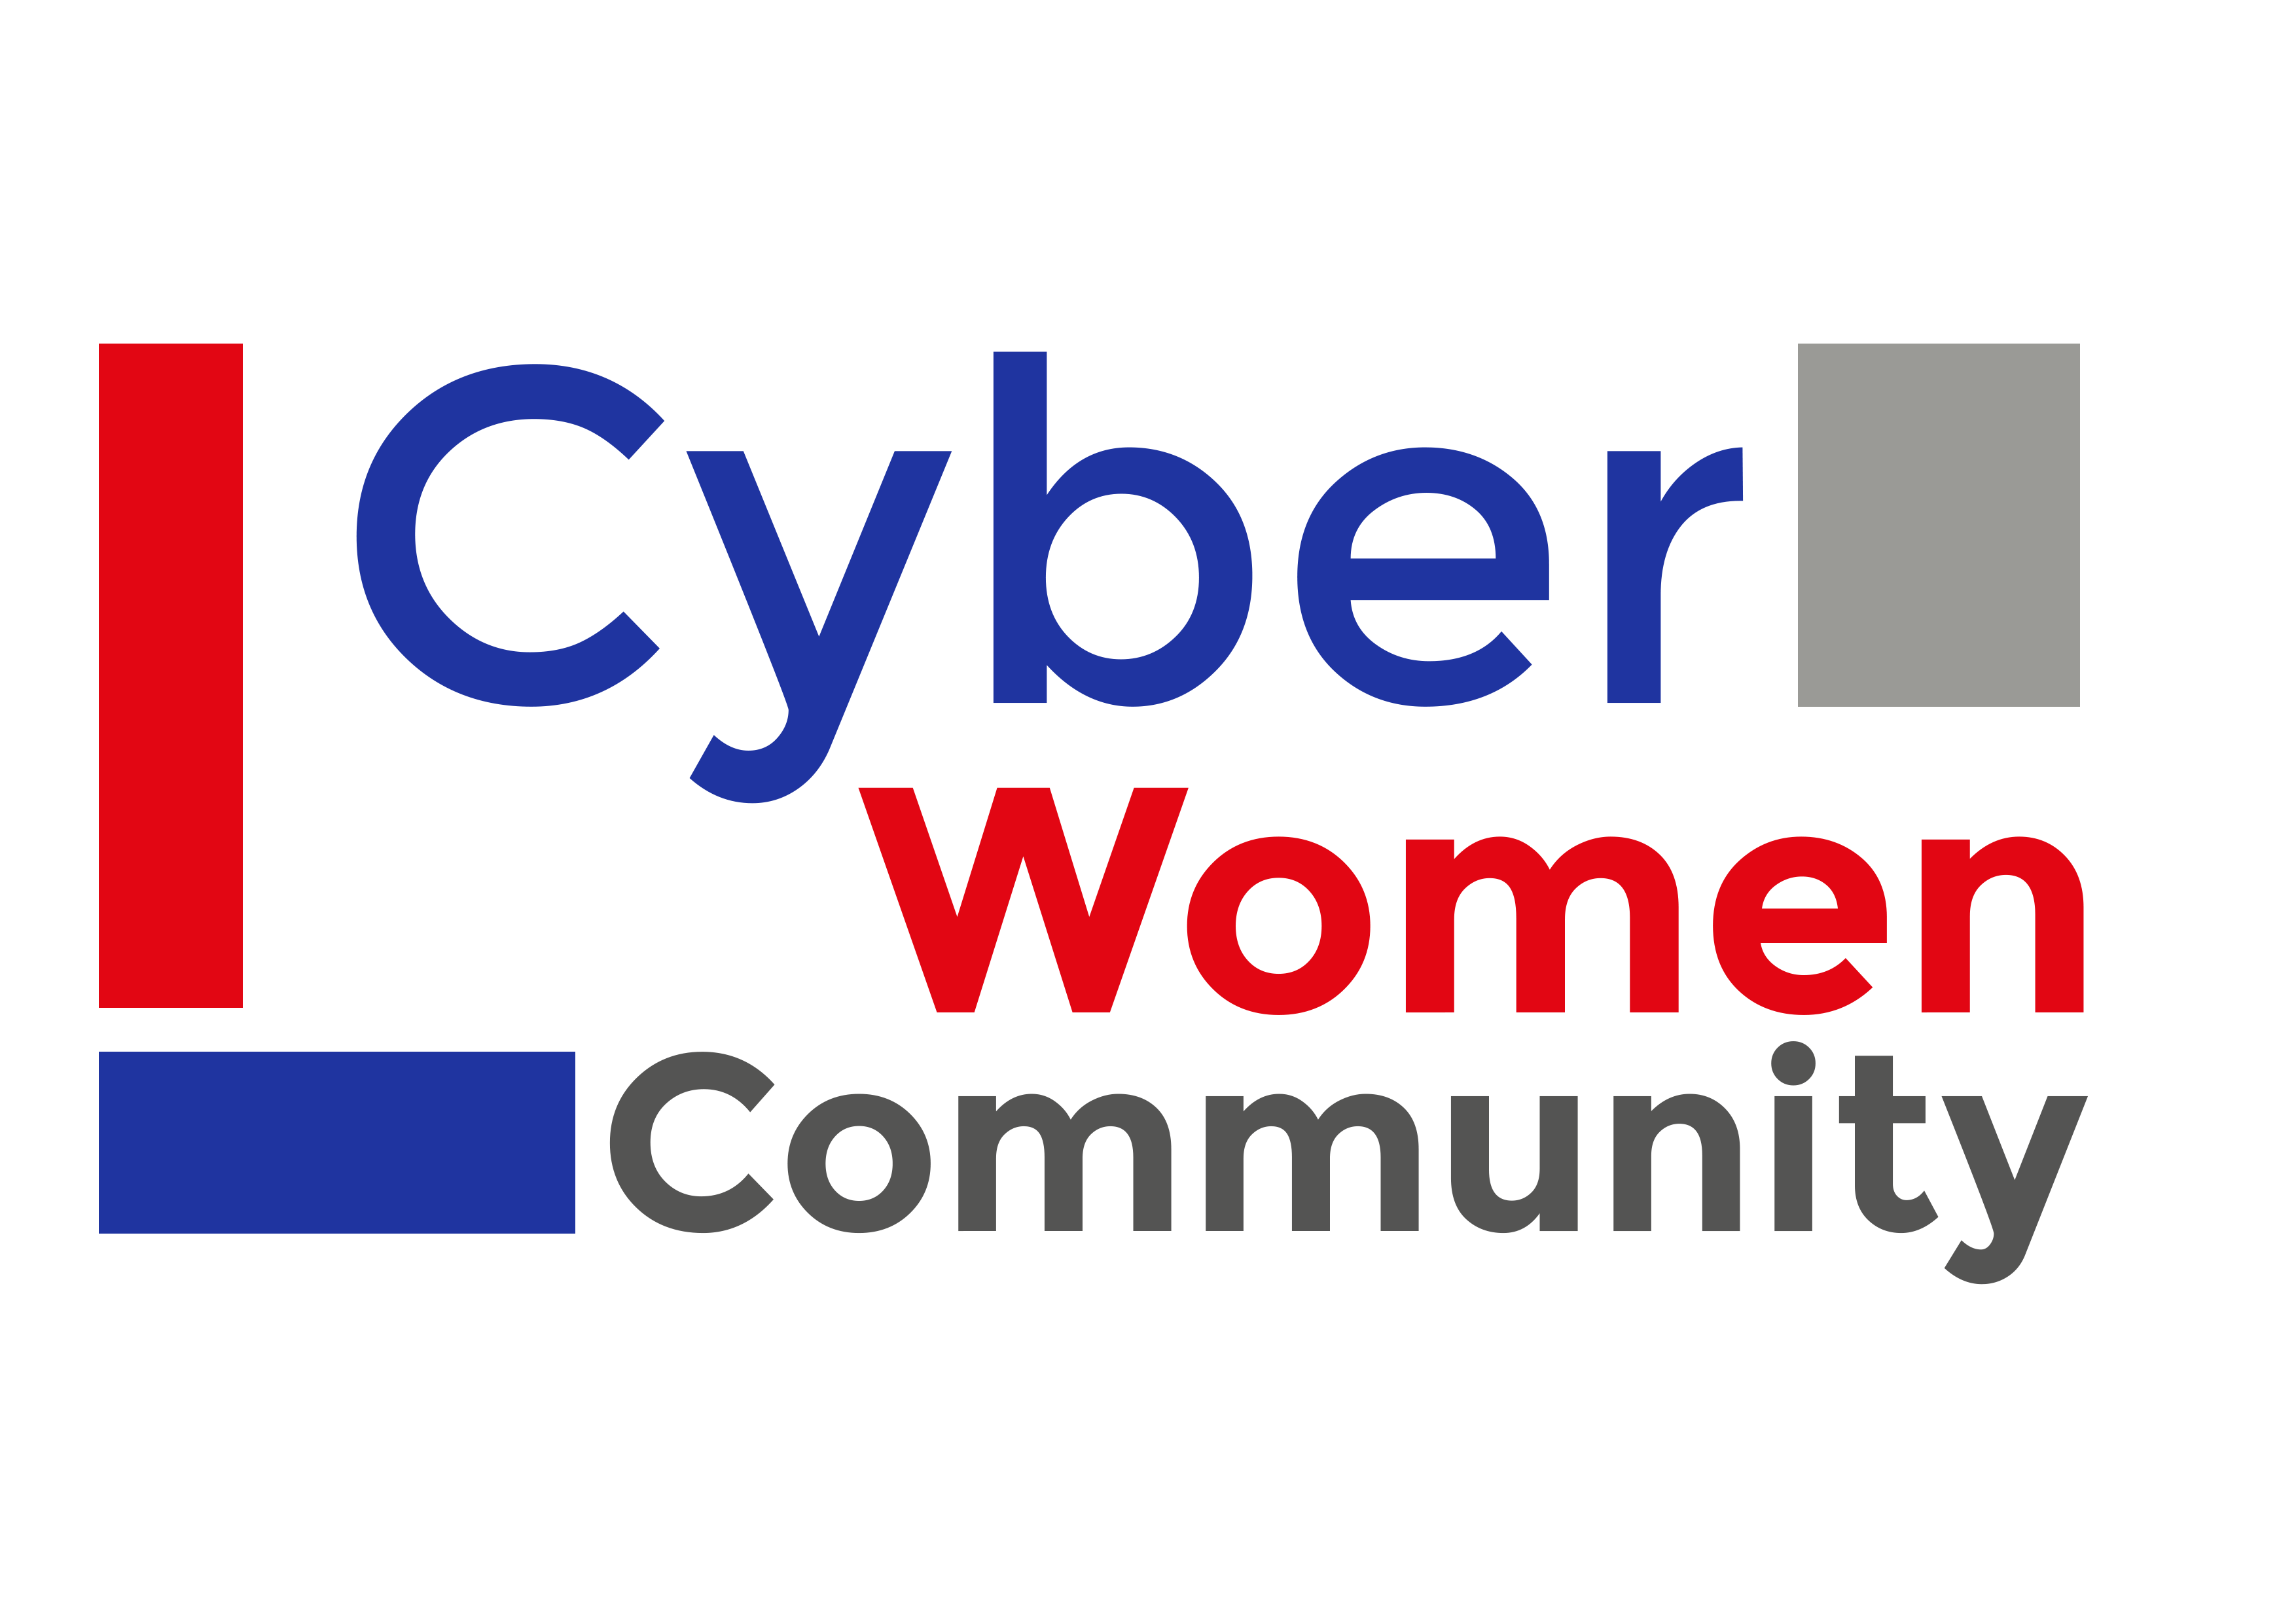 CYBER WOMEN COMMUNITY